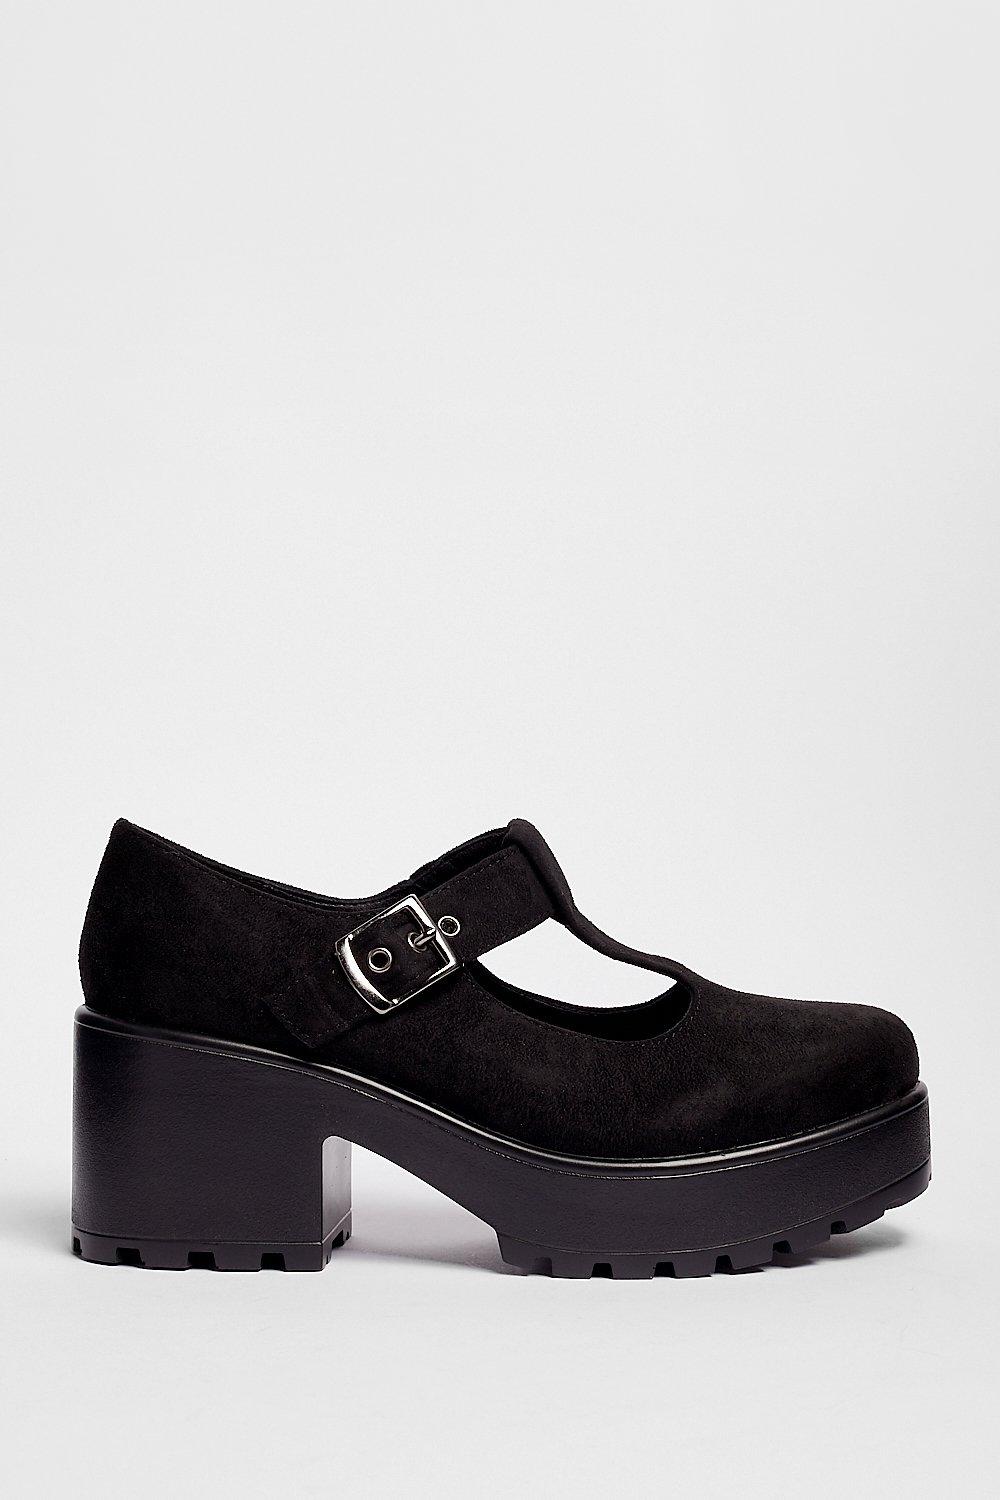 black t bar platform shoes